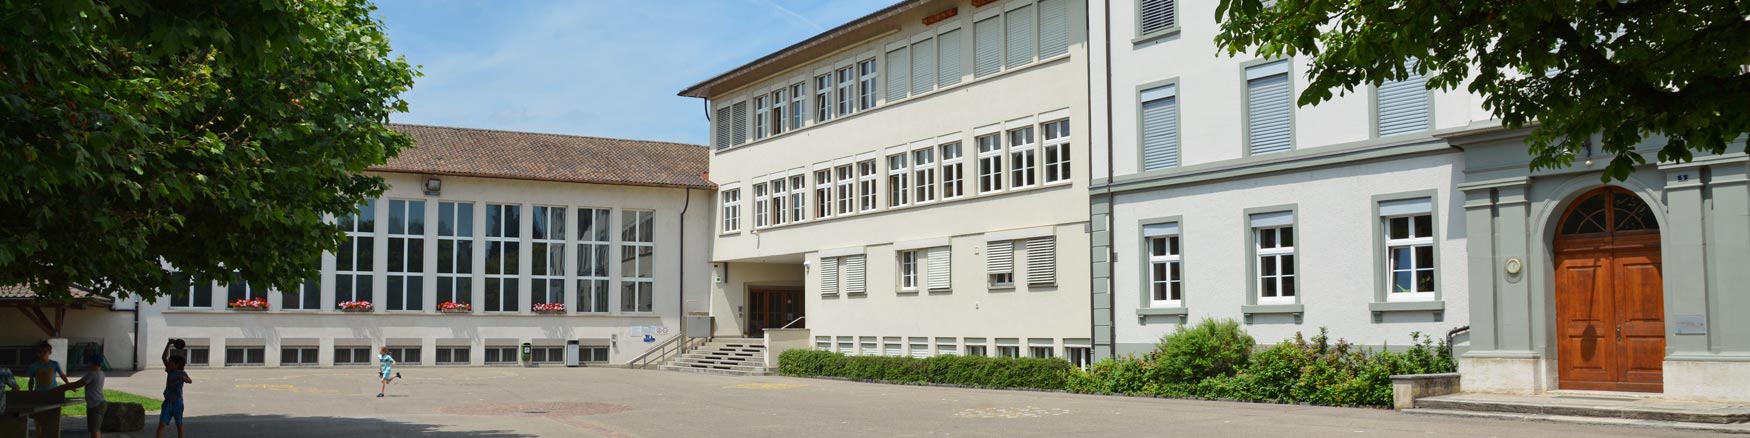 Primarschule Sissach